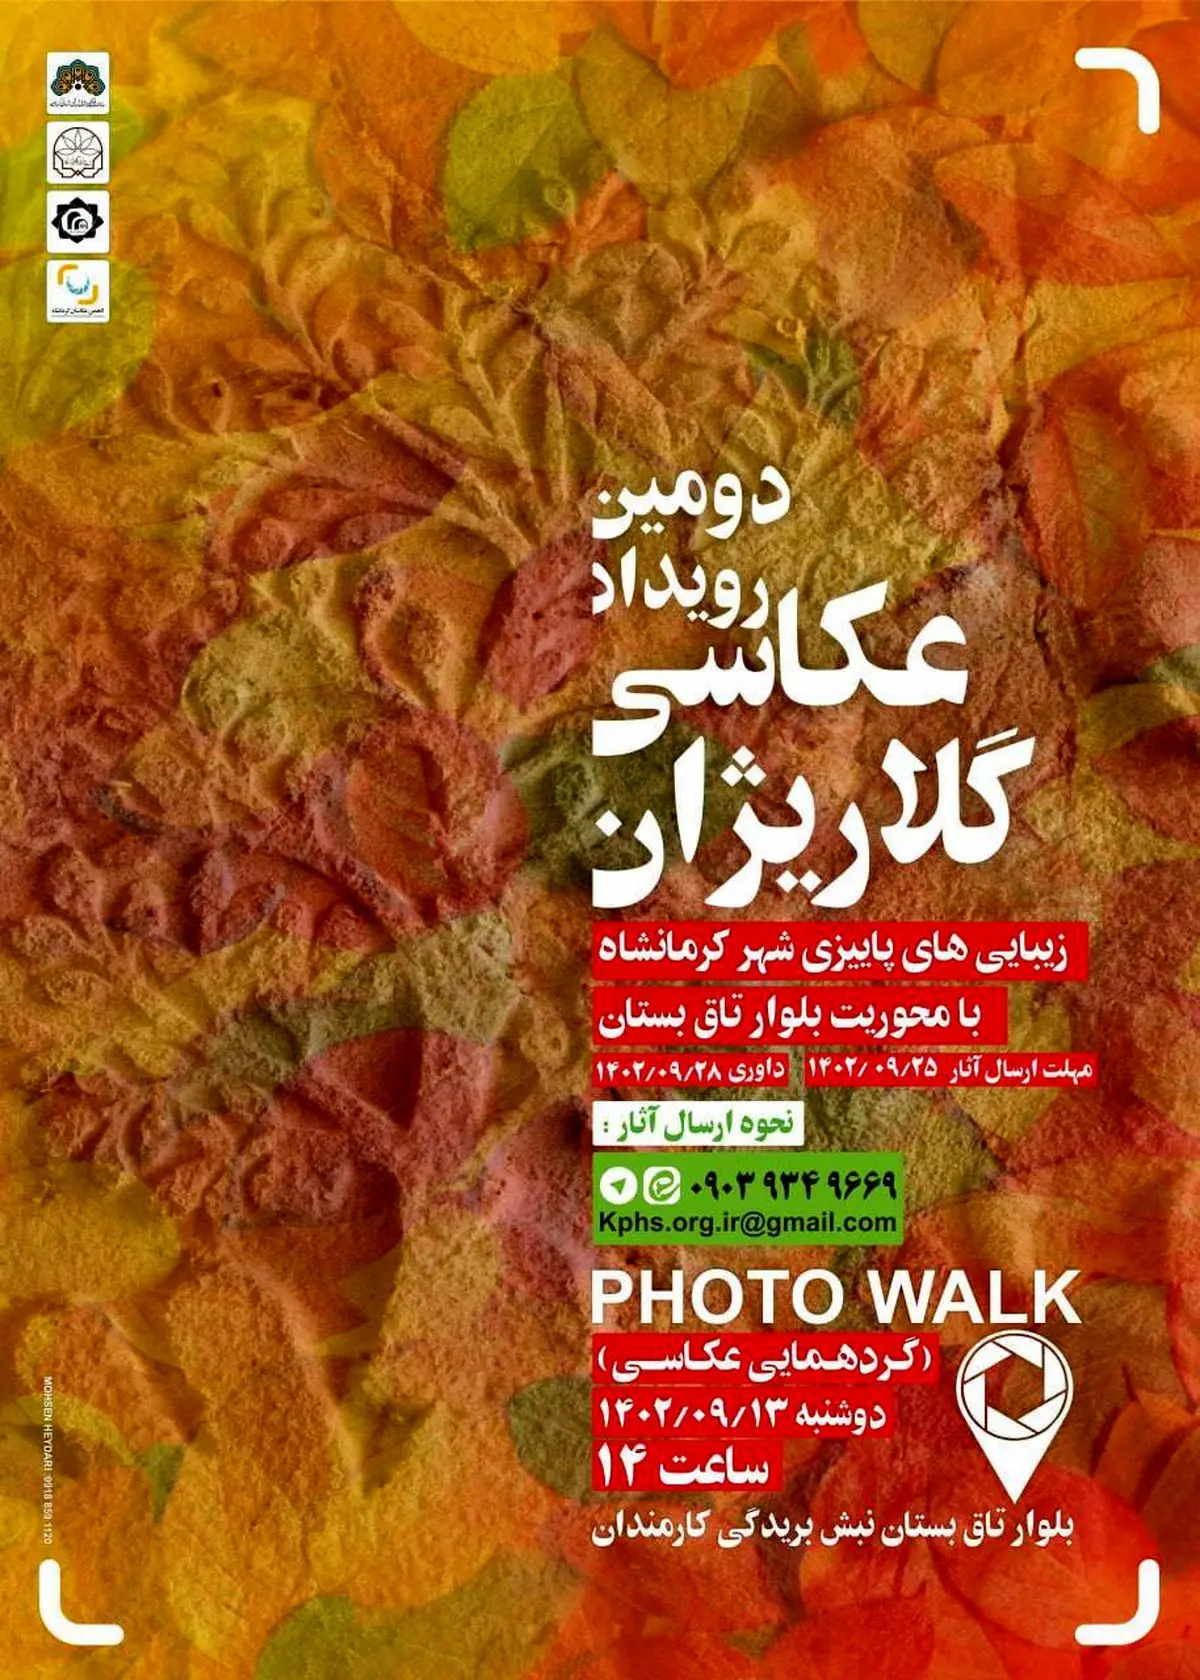  
رویداد عکاسی «گلاریژان» در کرمانشاه برگزار می‌شود 


